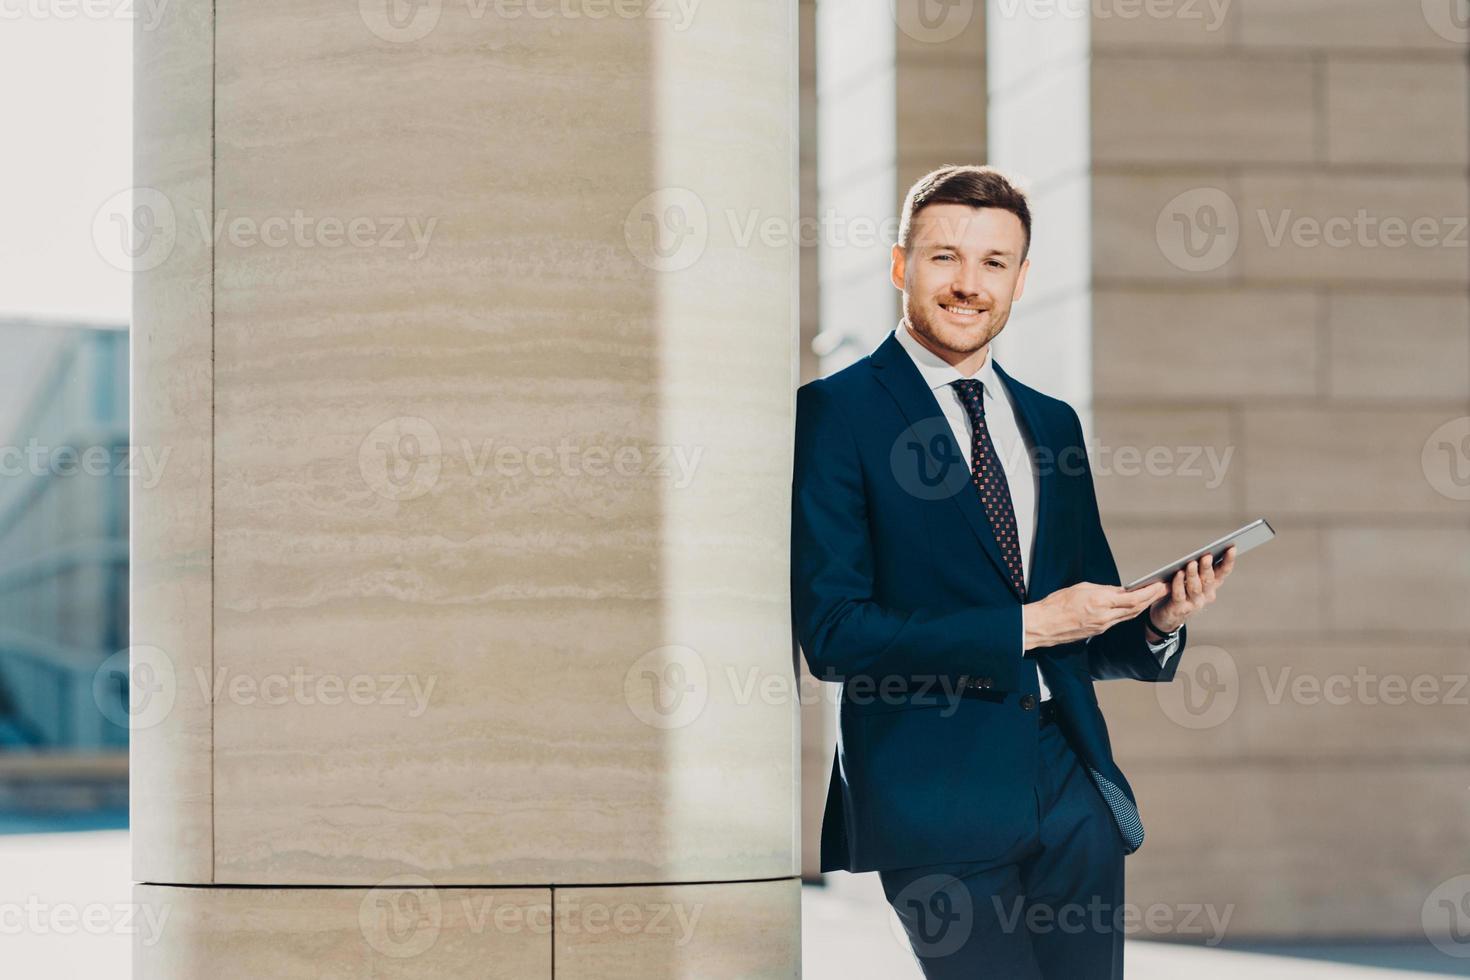 photo horizontale d'un directeur masculin prospère ravi et heureux utilise un ordinateur tablette moderne, vêtu d'un costume formel, se tient près d'un immeuble de bureaux, a une expression confiante et heureuse. employé de bureau avec appareil